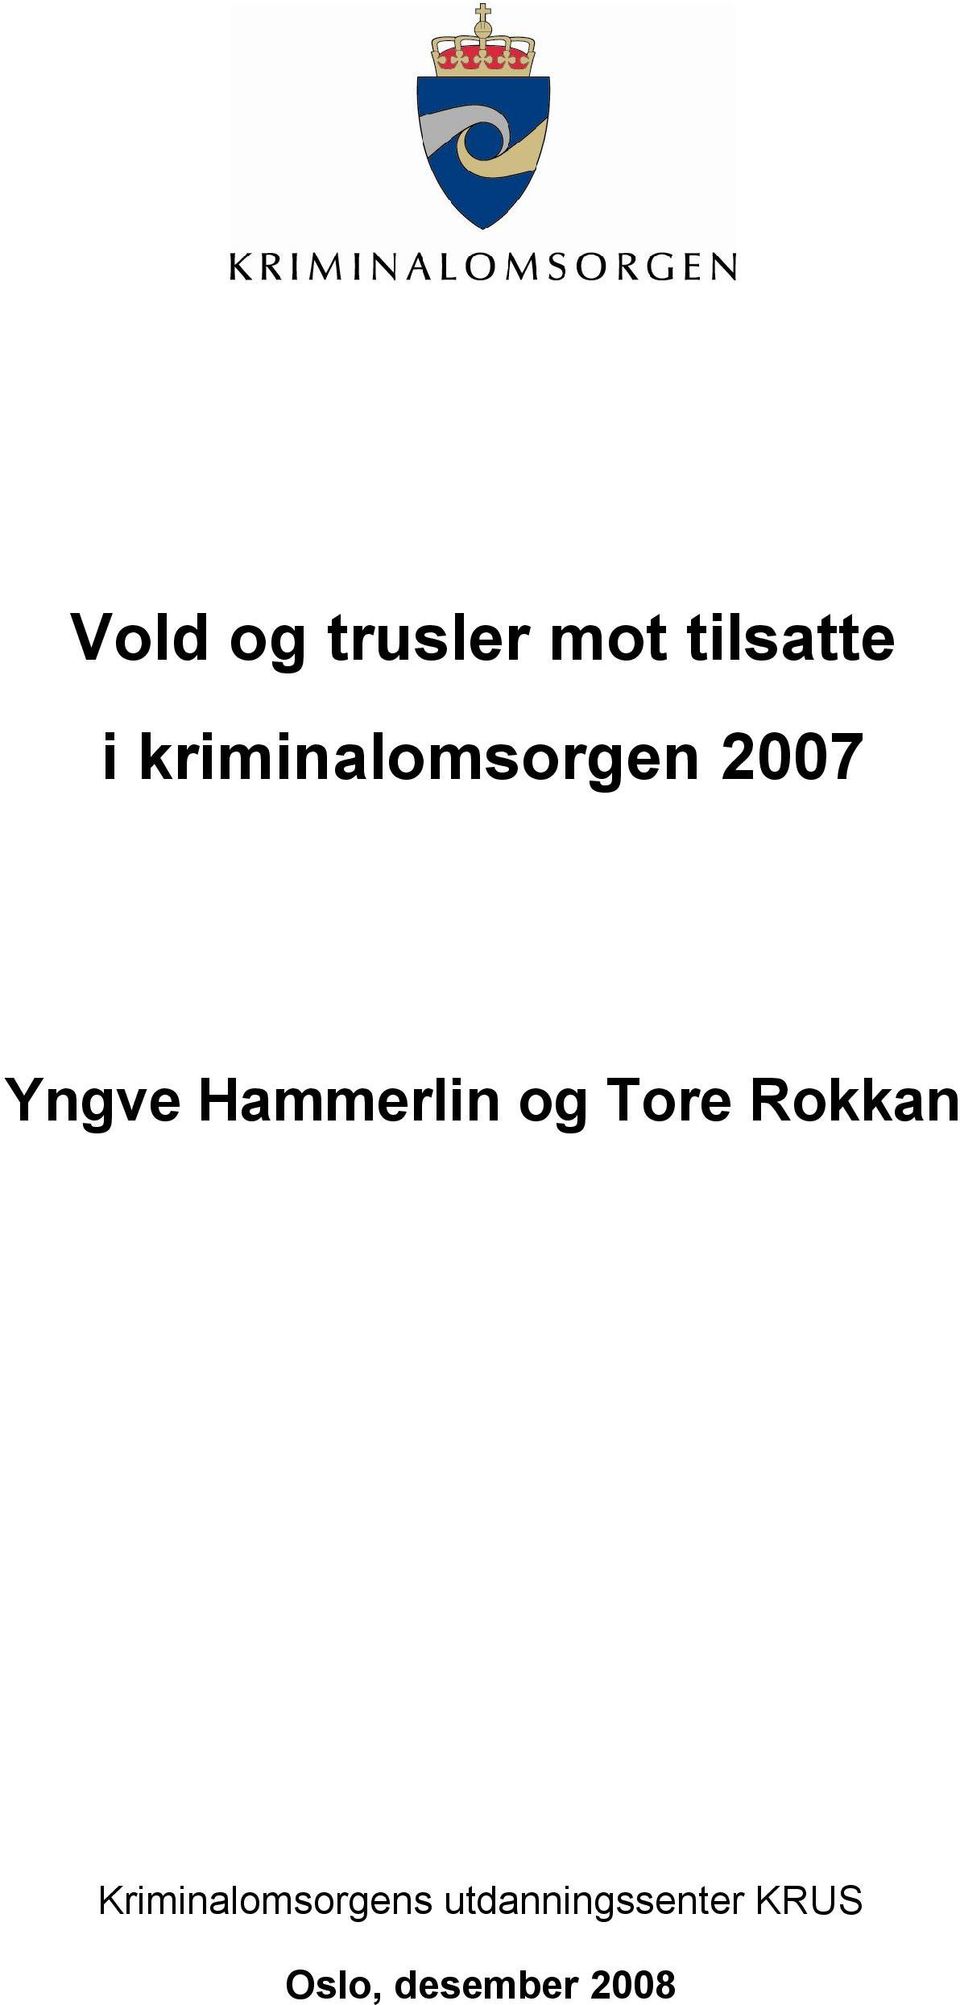 Hammerlin og Tore Rokkan